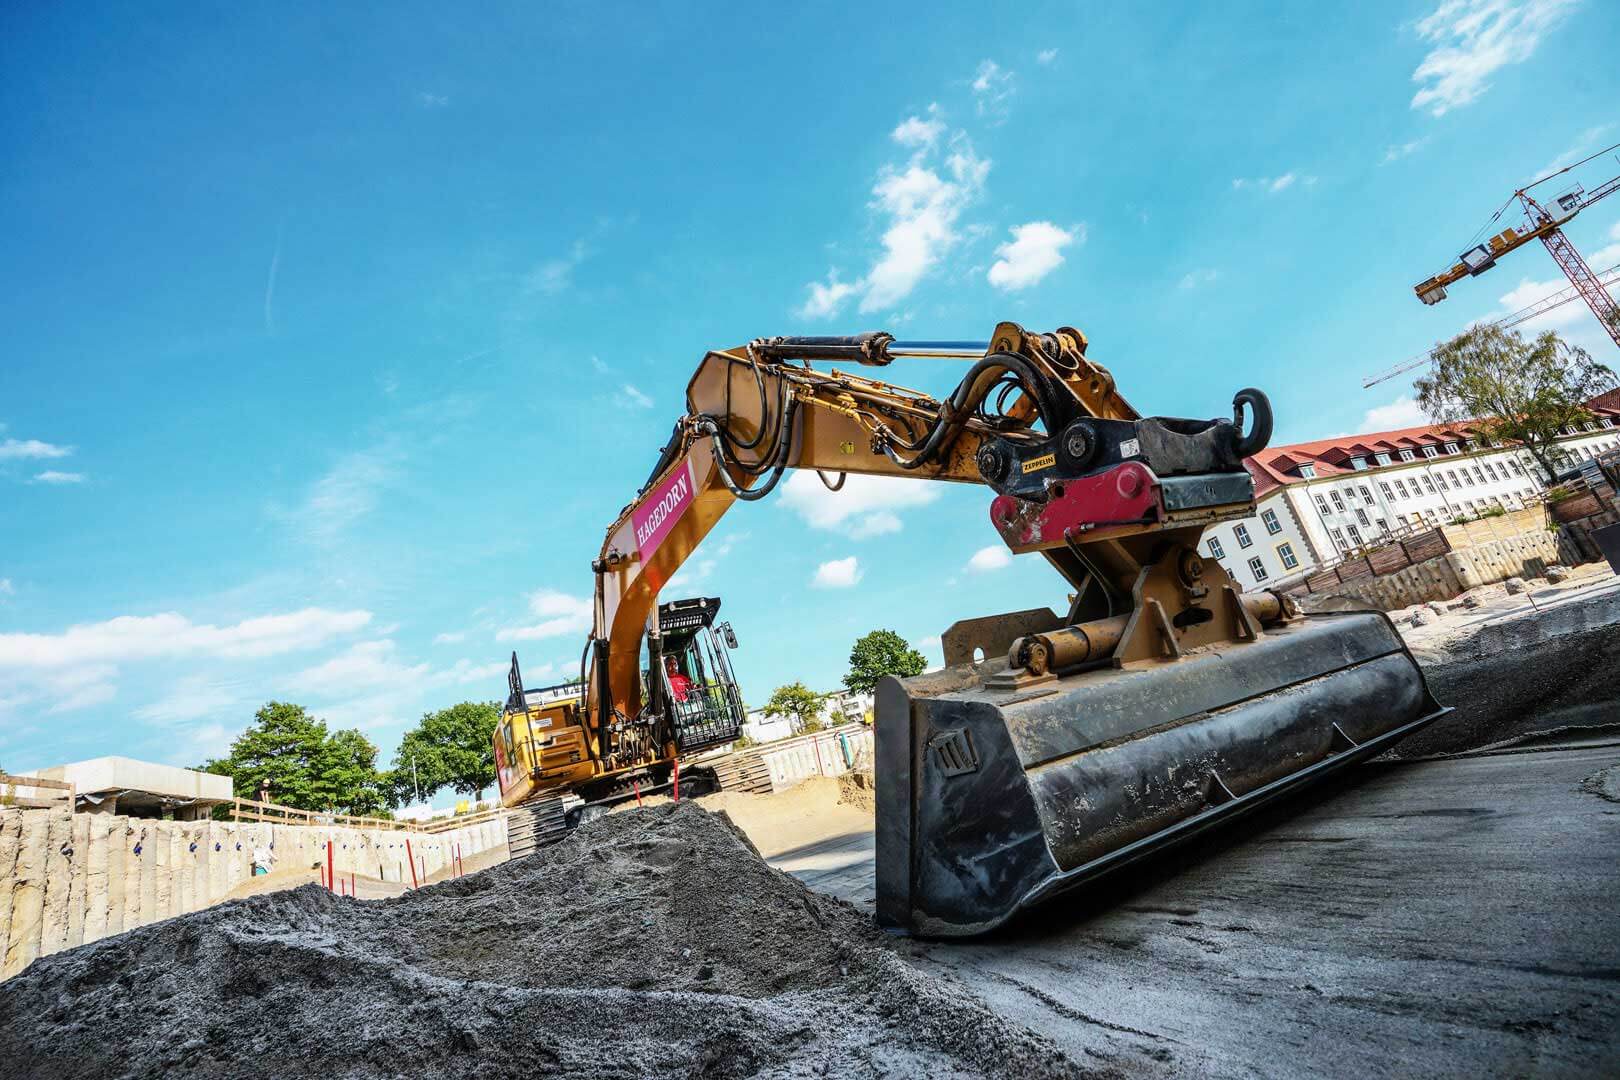 Eine eindrucksvolle Baustellenszene: Der gewaltige LongFrontBagger von Hagedorn steht im Vordergrund, arbeitend auf einer Baustelle. Seine Schaufel begradigt den Boden.